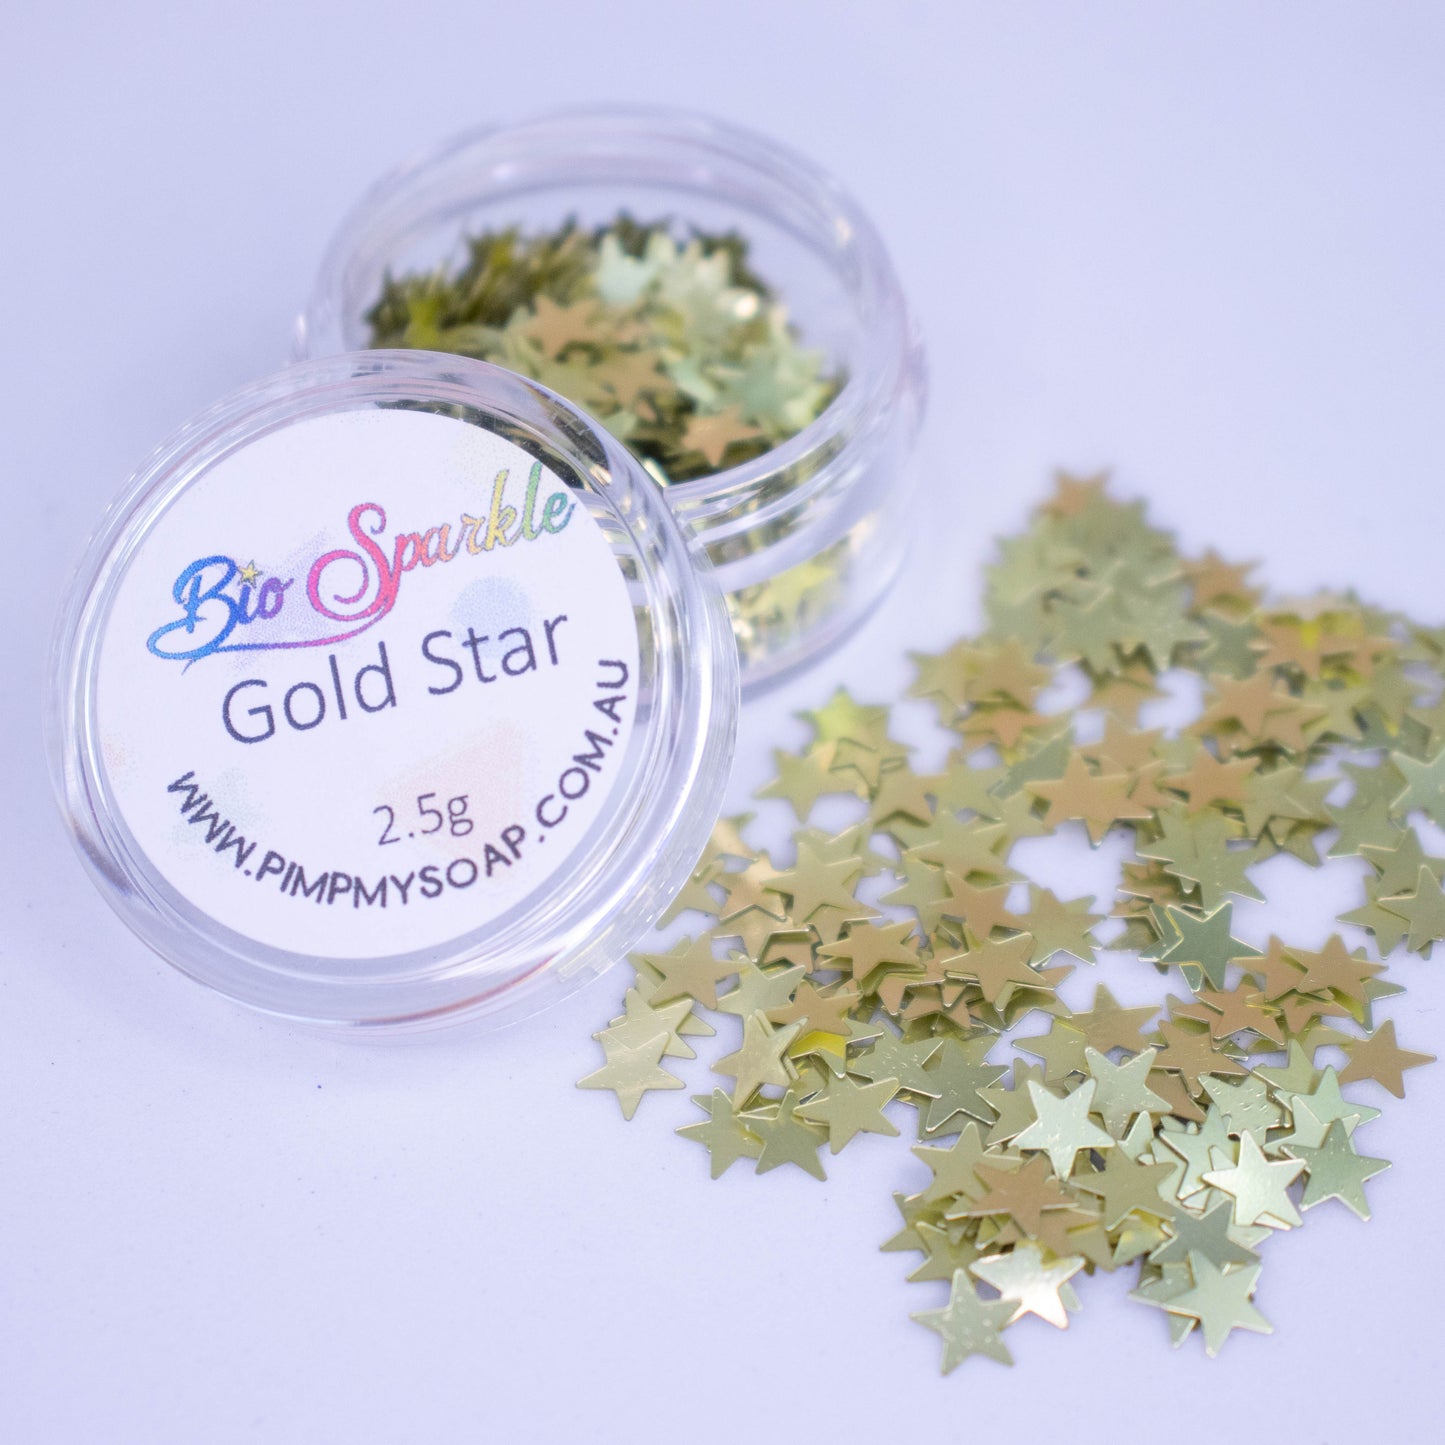 Gold Star Bio Sparkle